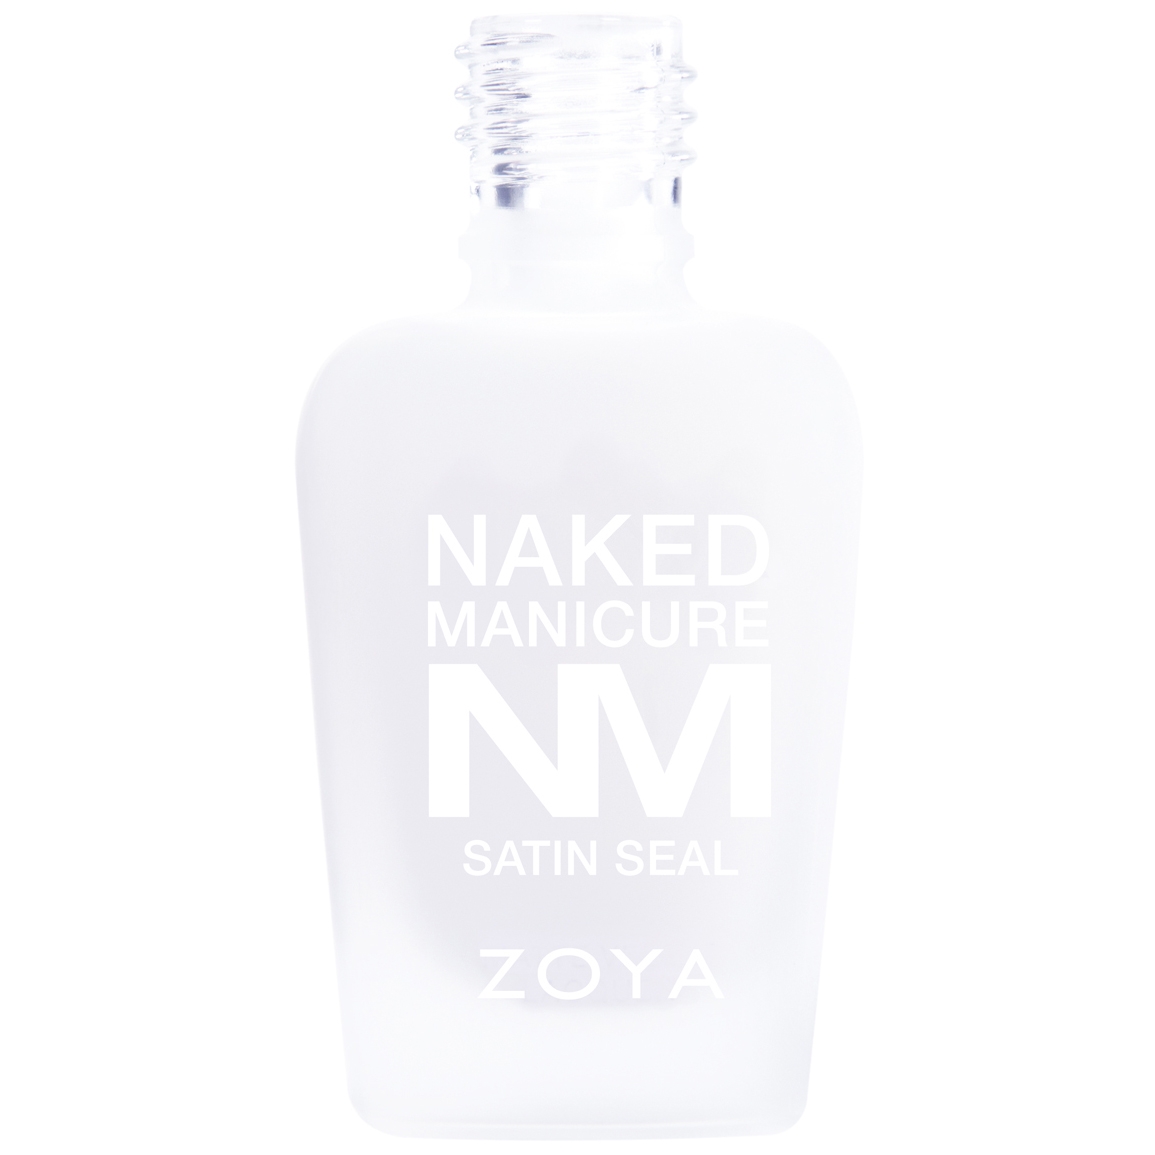 Zoya Naked Manicure Seal - Satin